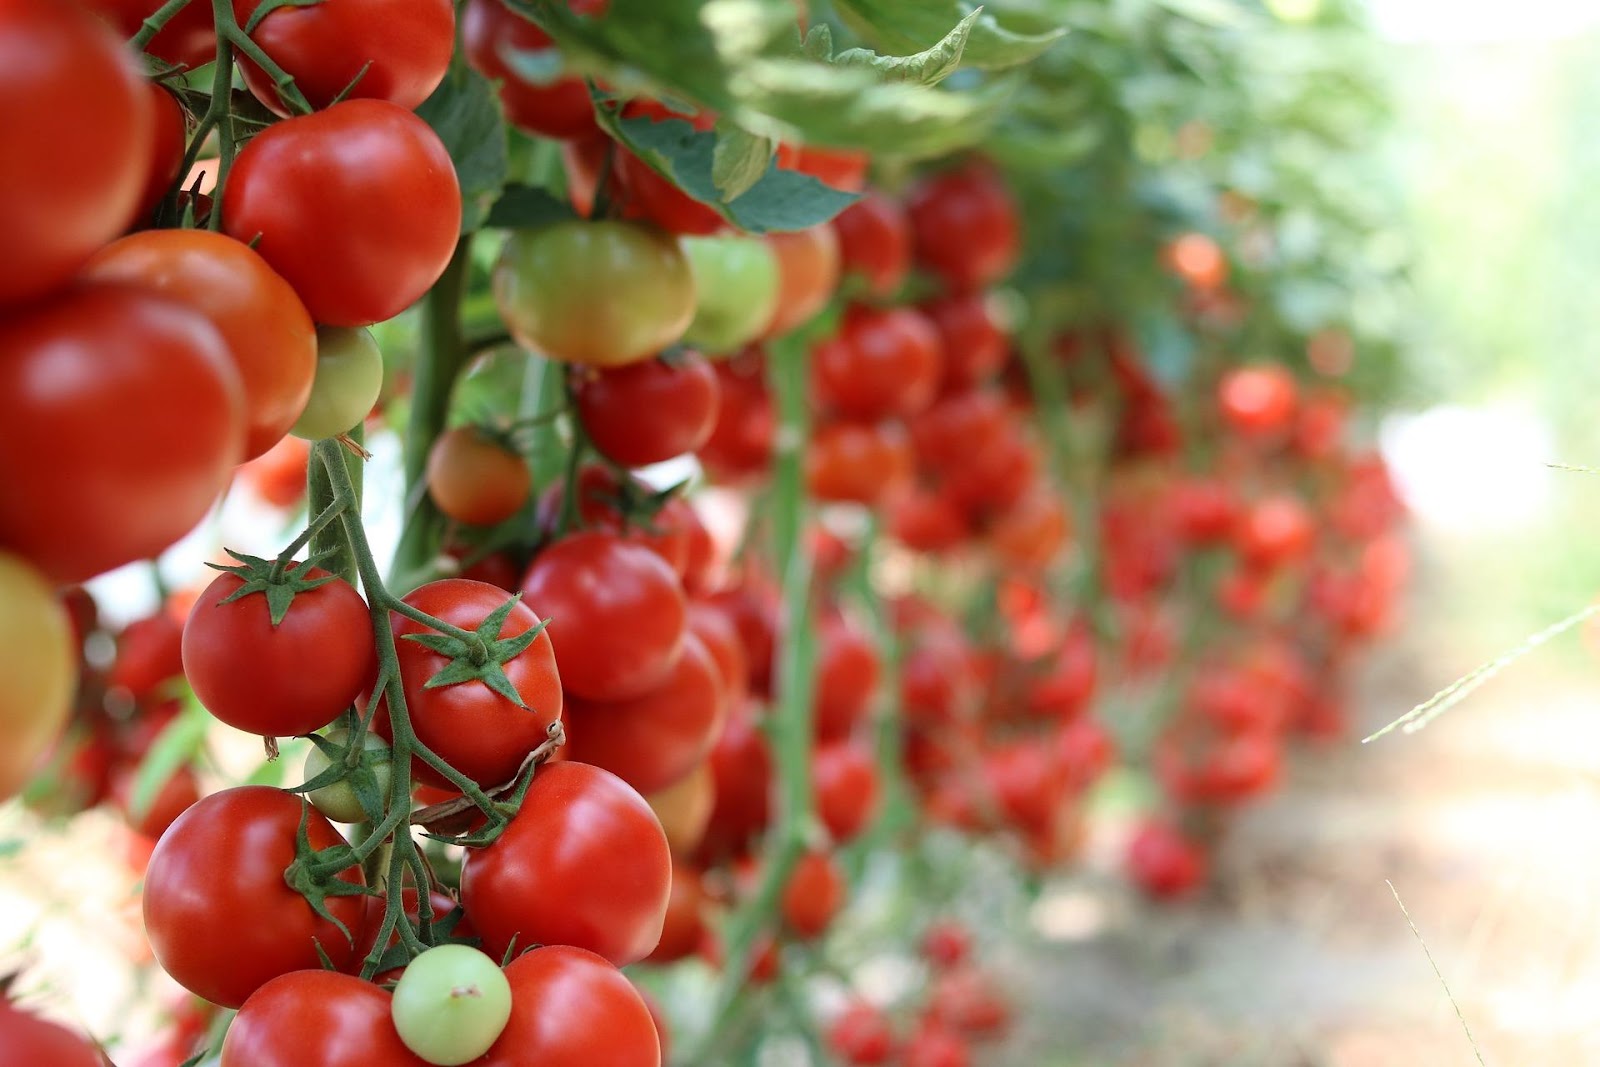 Gurķu un tomātu audzēšana siltumnīcā – padomi| Xnet.lv